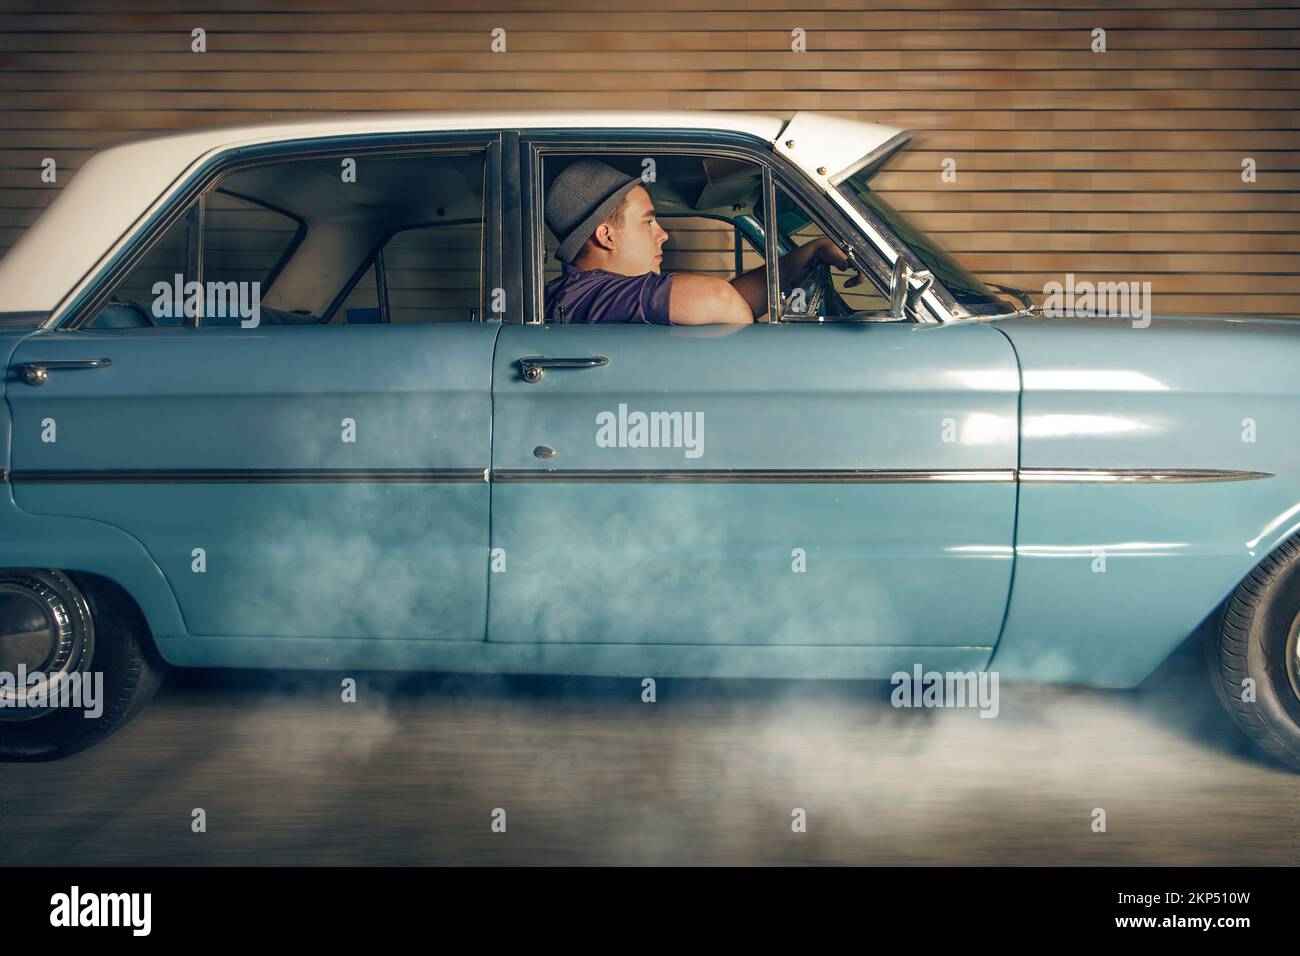 Un homme de 1950 ans assis à l'intérieur d'une voiture d'époque fume les pneus dans un mouvement de décollage en s'éloignant du passage de la voie arrière. Poursuite à chaud Banque D'Images